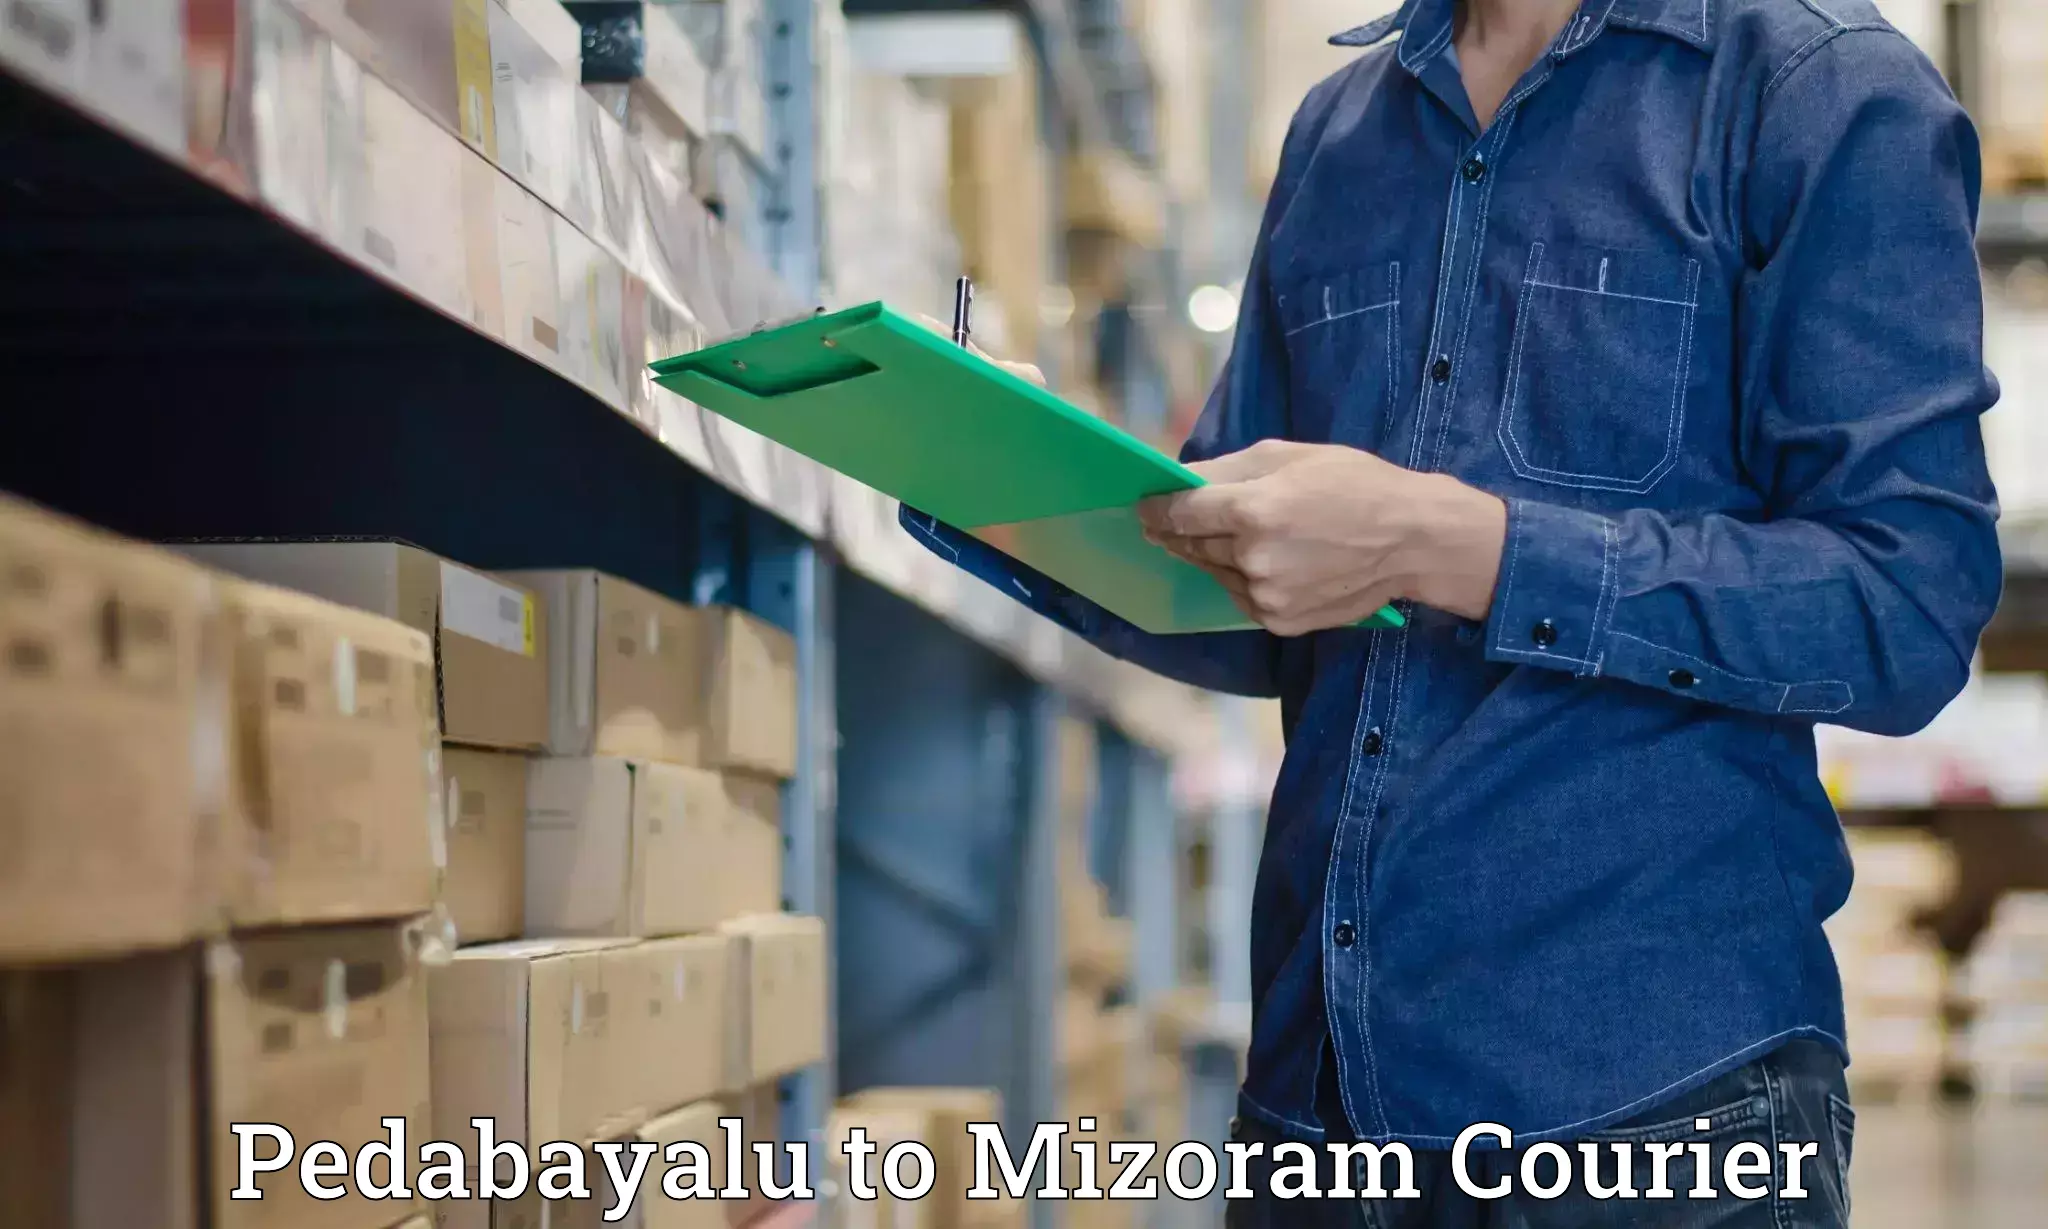 Large-scale shipping solutions Pedabayalu to Mizoram